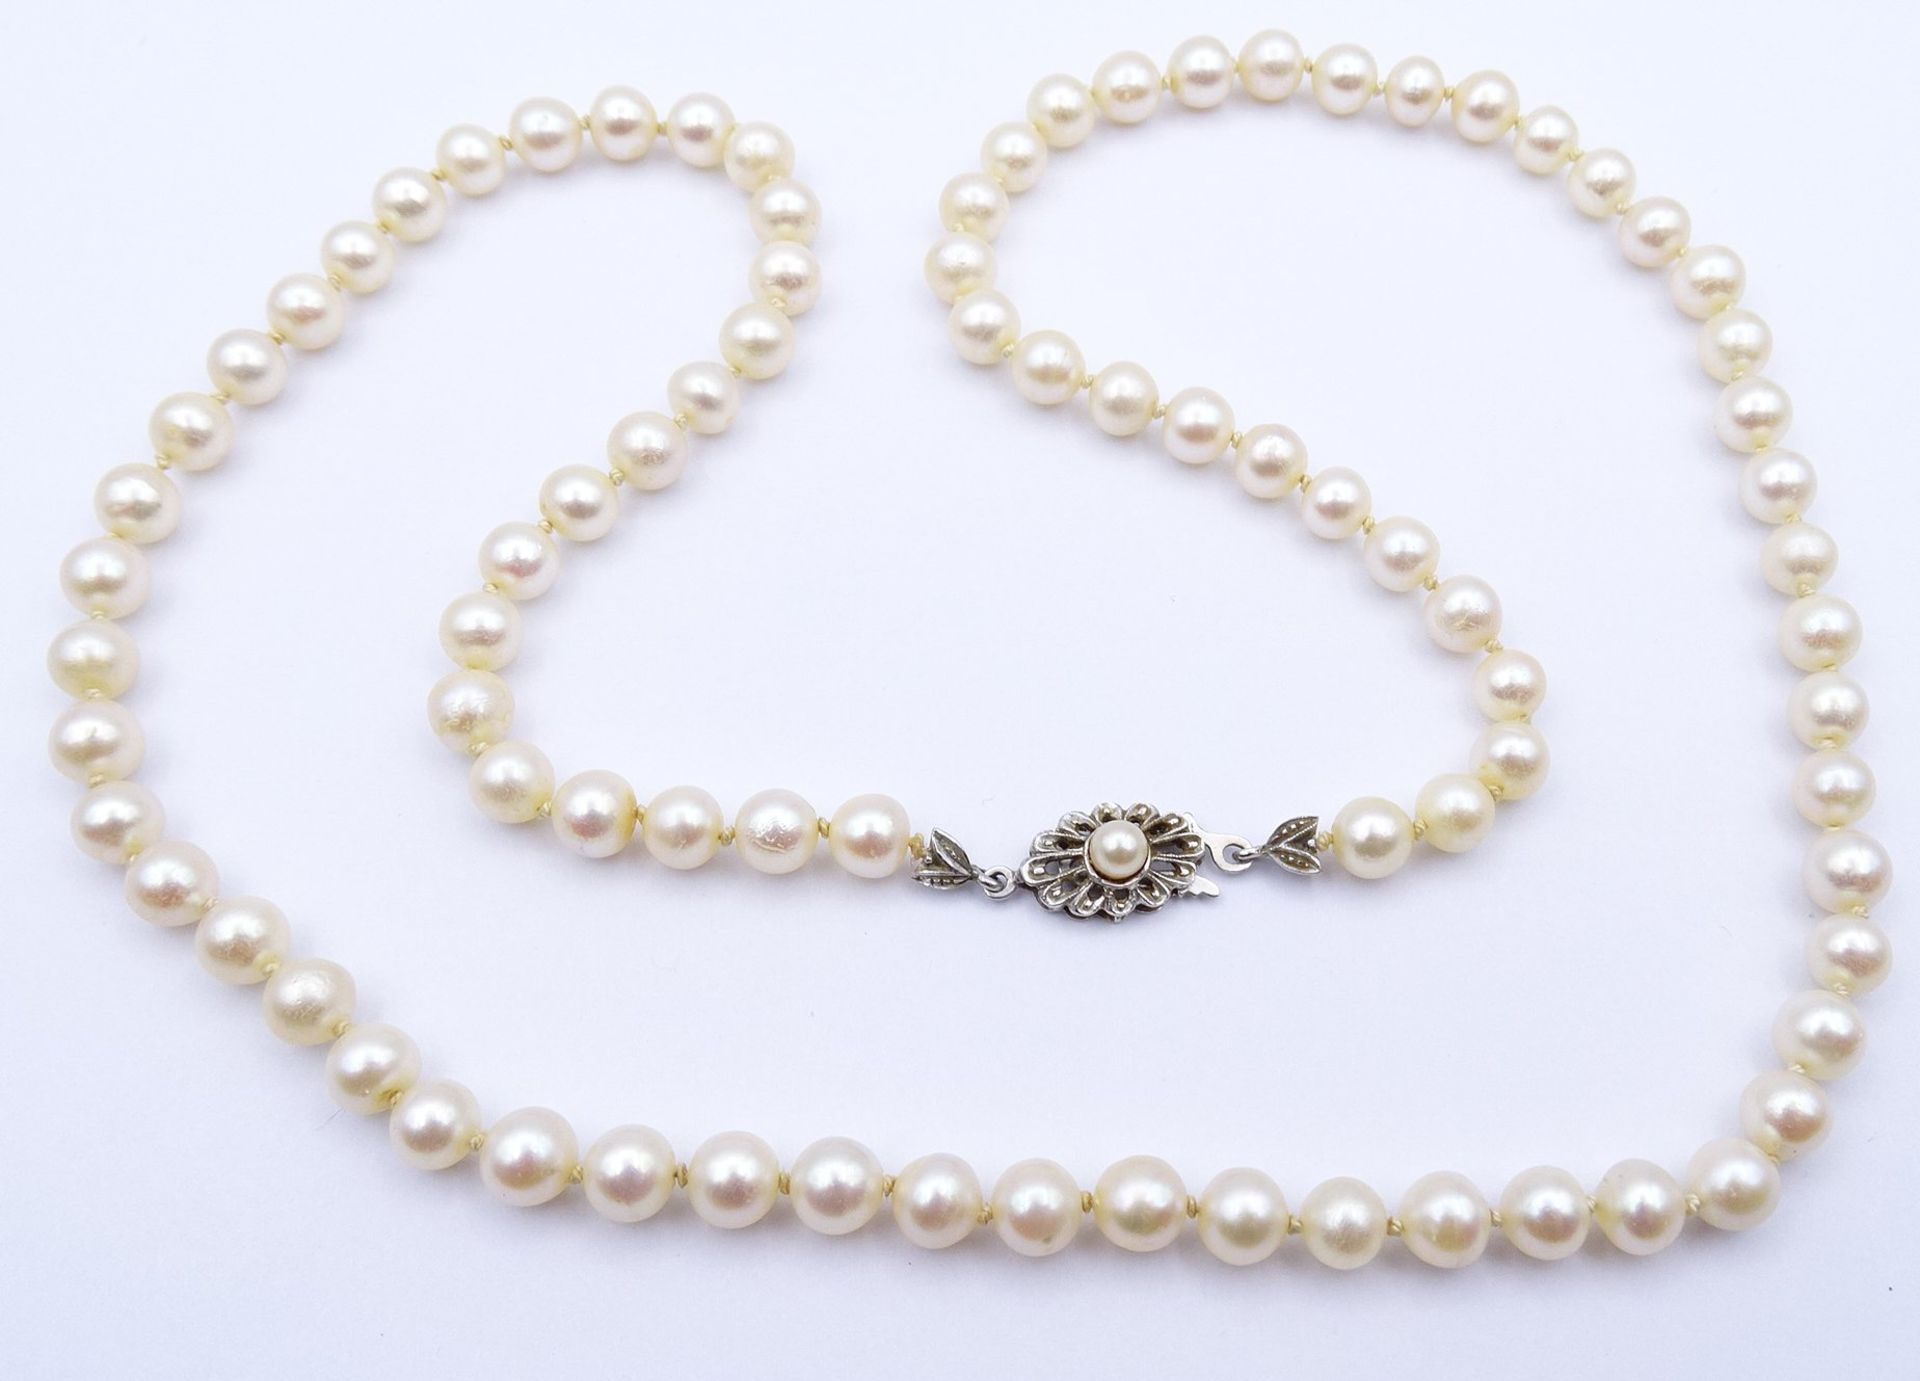 Perlen Halskette mit Weißgold Verschluss 585/000, L. 62cm, D. 6,0 - 6,5mm, 29,7g. - Bild 2 aus 5